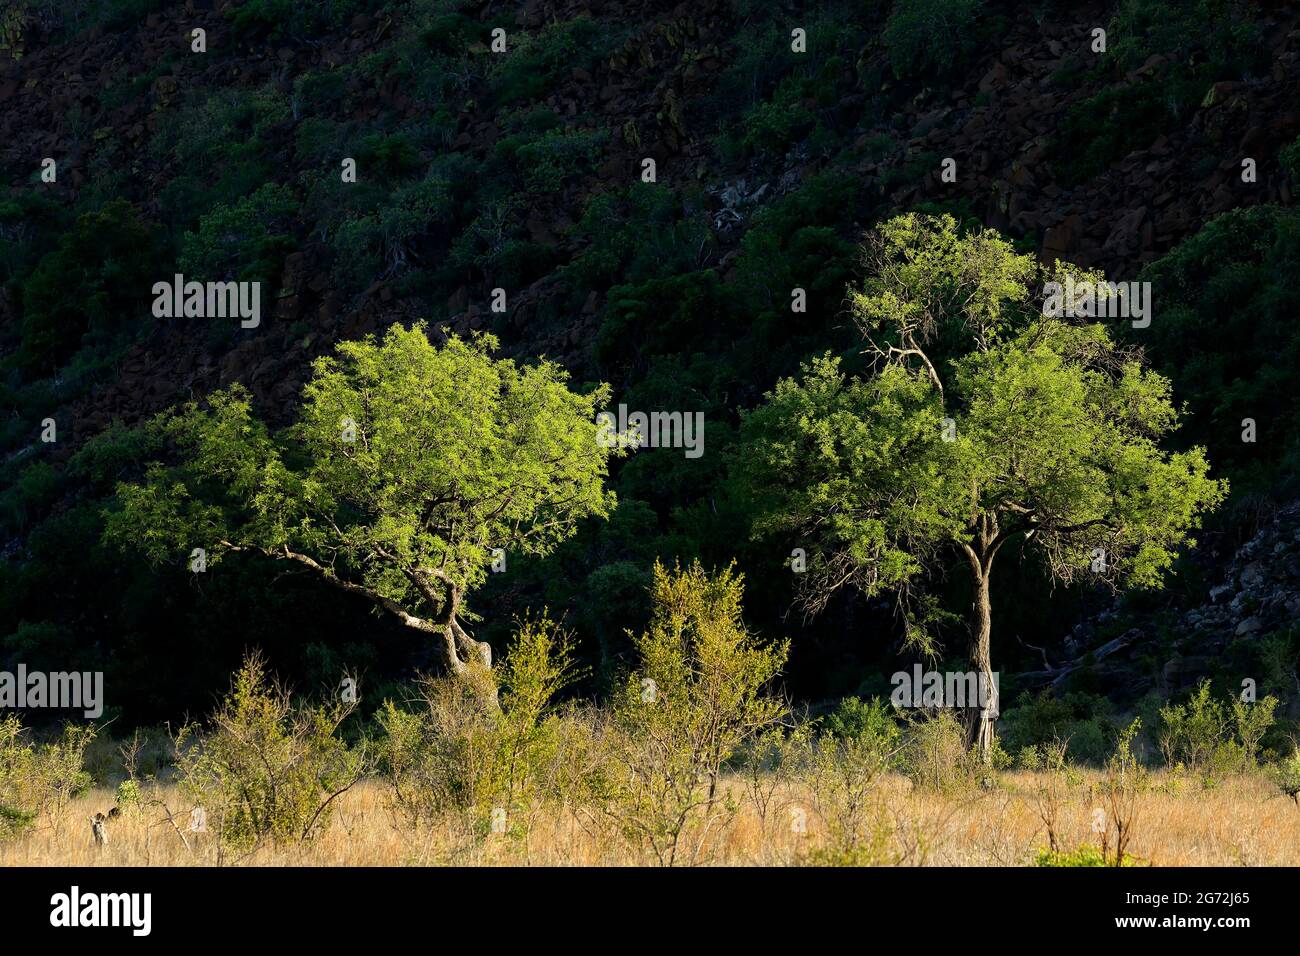 Savane africaine sur fond ombragé, Parc national Kruger, Afrique du Sud Banque D'Images